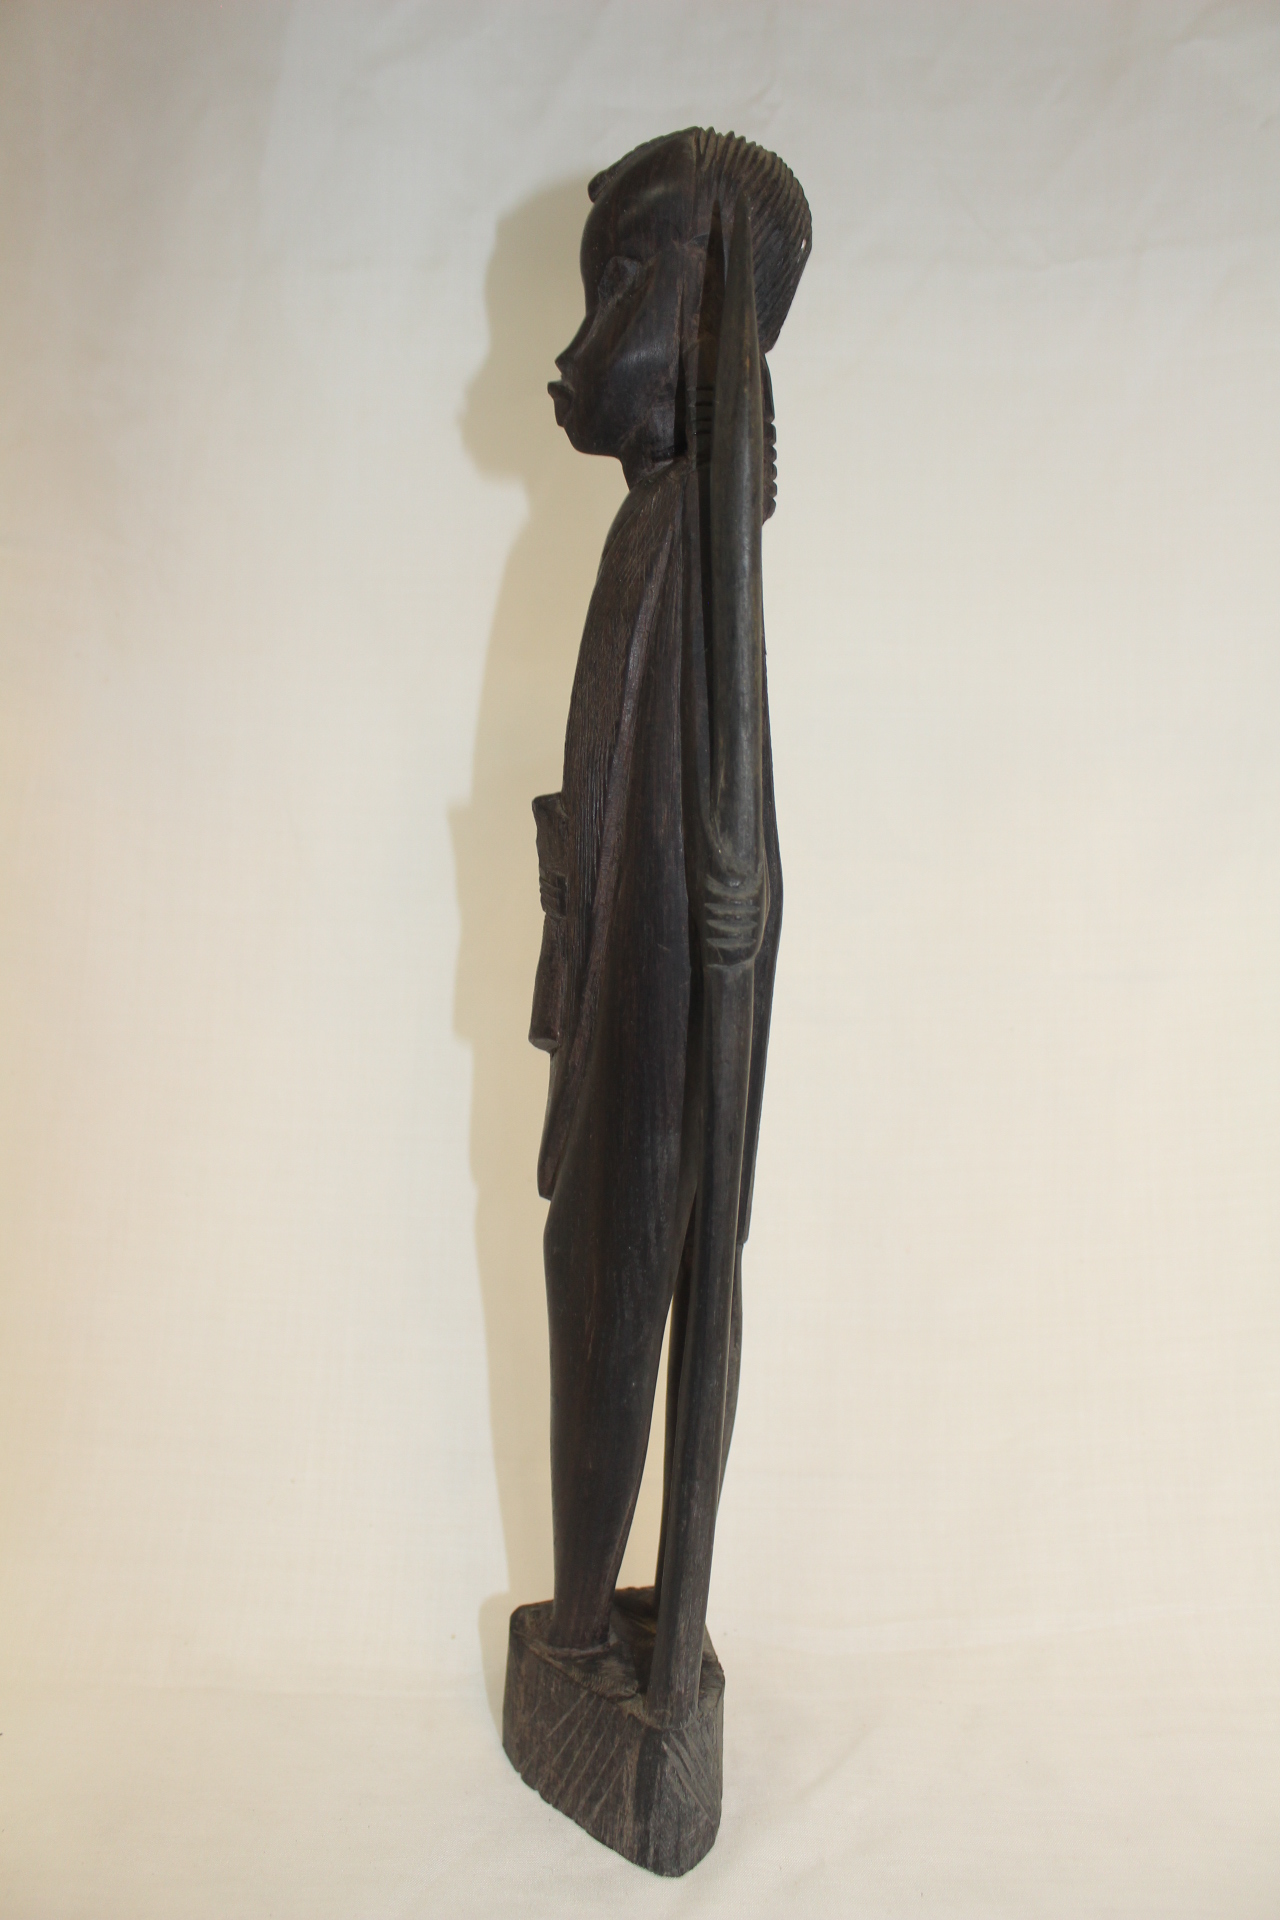 외국산 아주강한 흑단계열의 나무를 조각한 아프리카인물 조각상